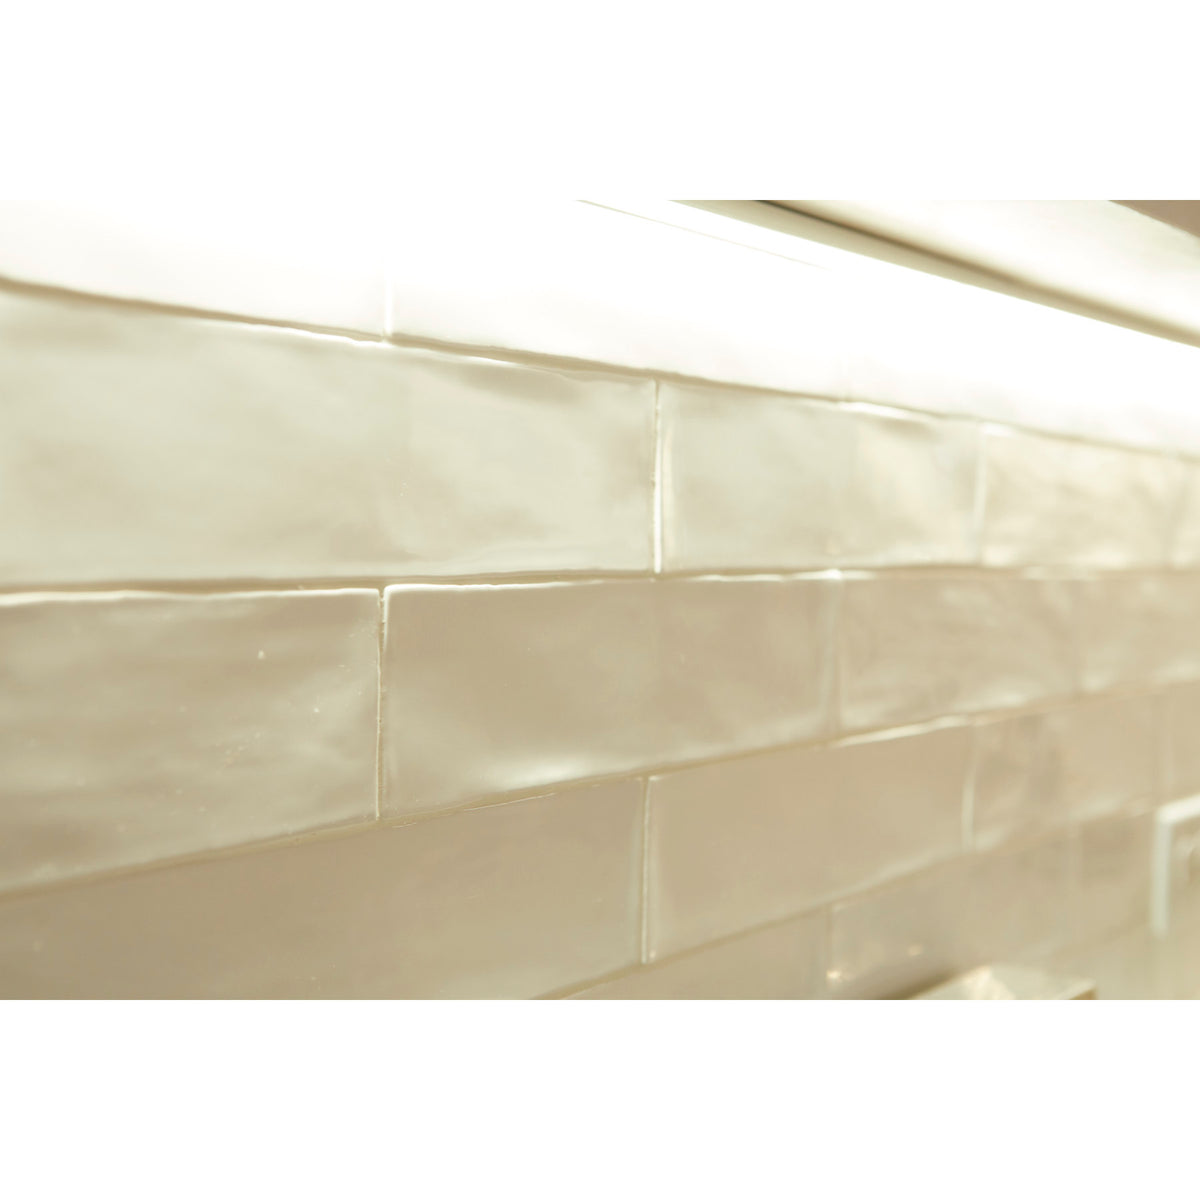 Daltile - Artigiano™ - Italian Alps™ 3 in. x 12 in. Glazed Ceramic Wall Tile Close View Installed